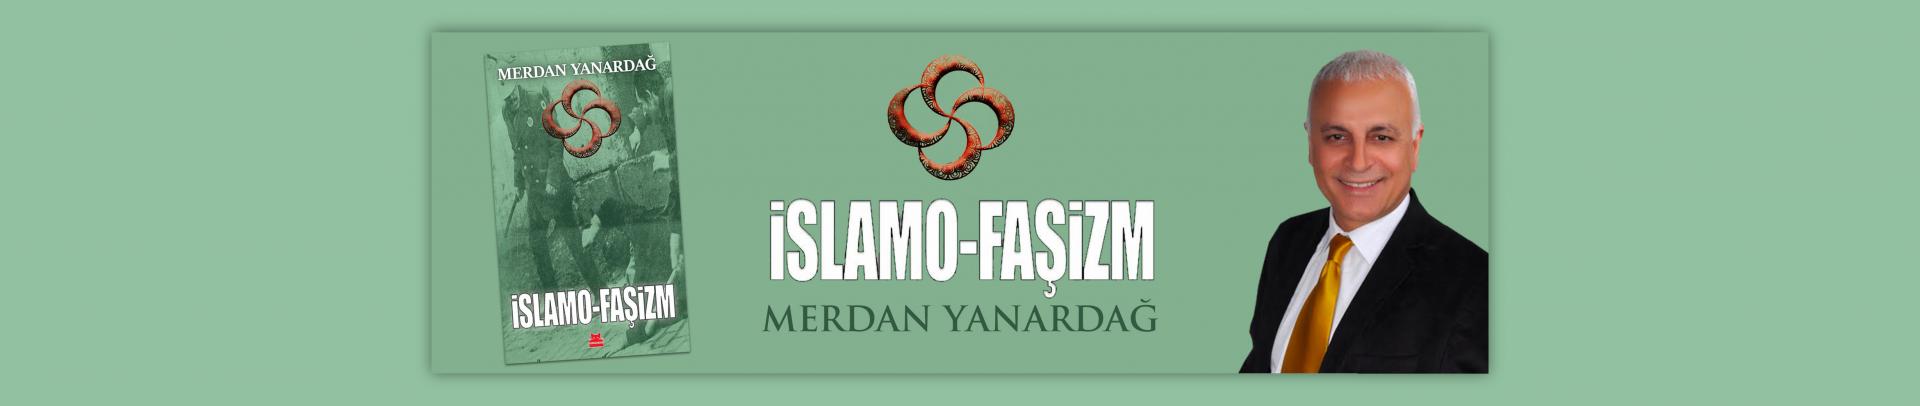 islamo-fasizm